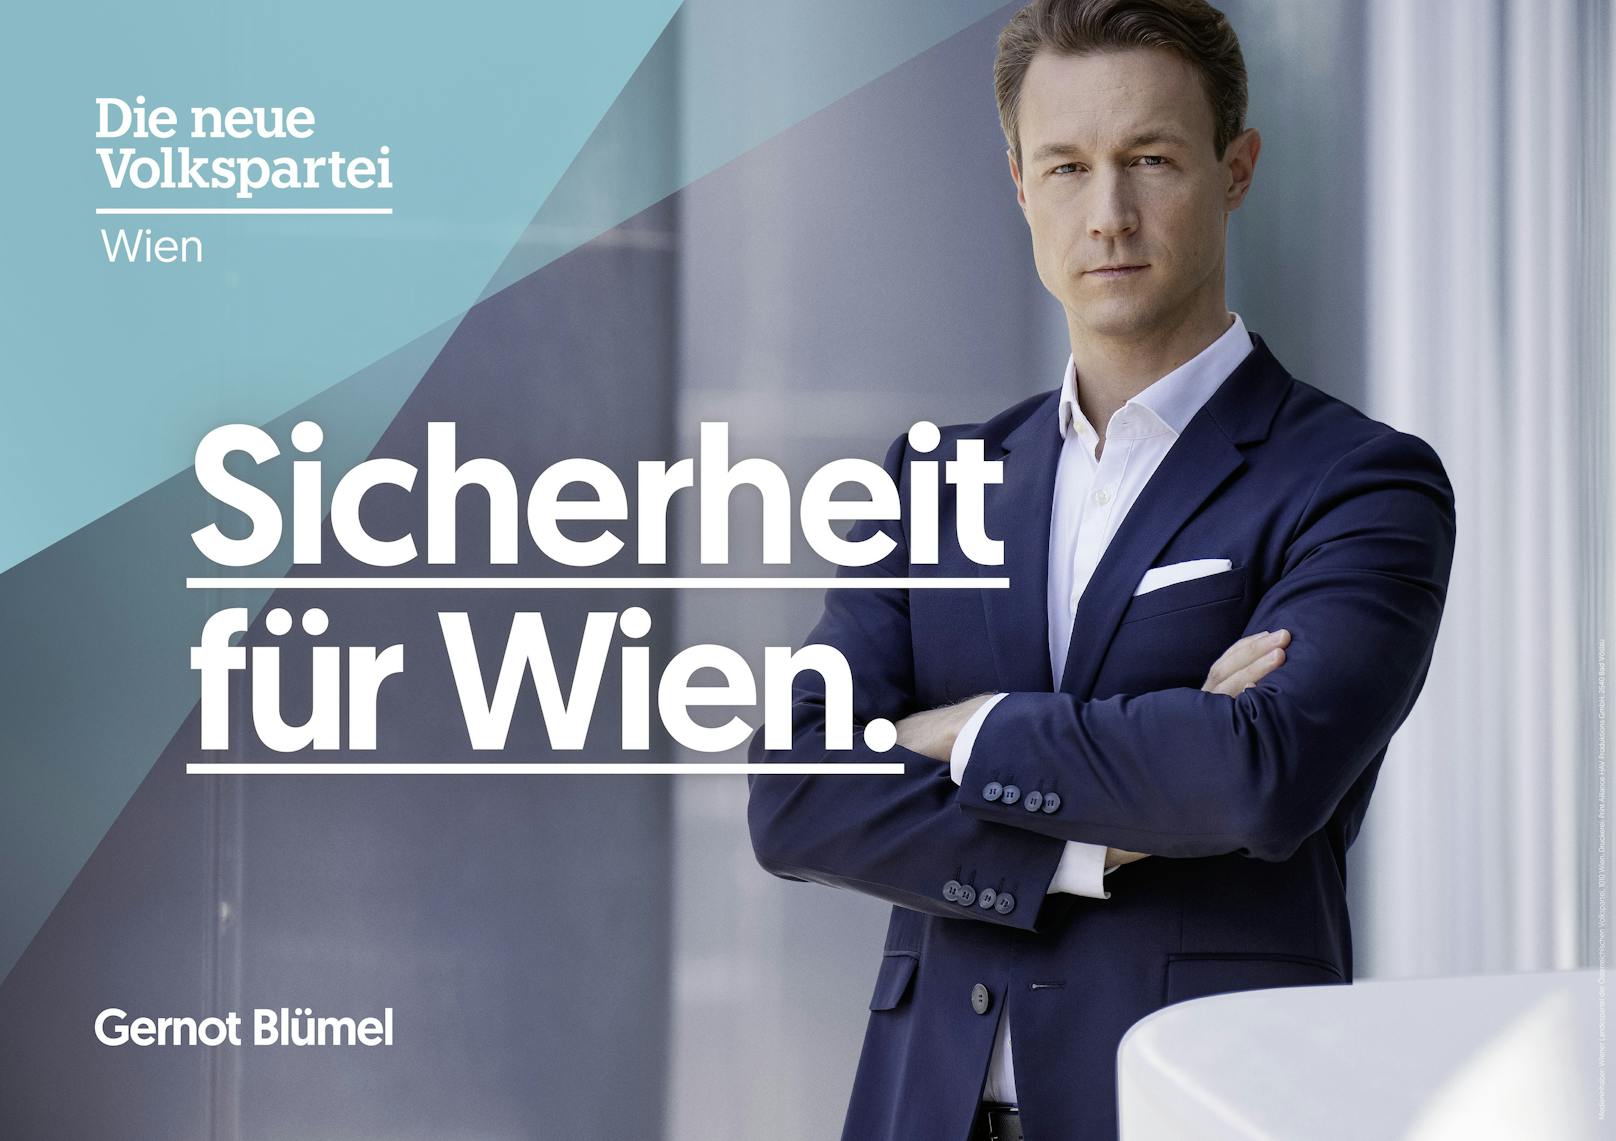 Thematisch setzt die ÖVP einen MItte-Rechts-Wahlkampf mit den Themen Sicherheit, Integration und Leistung.